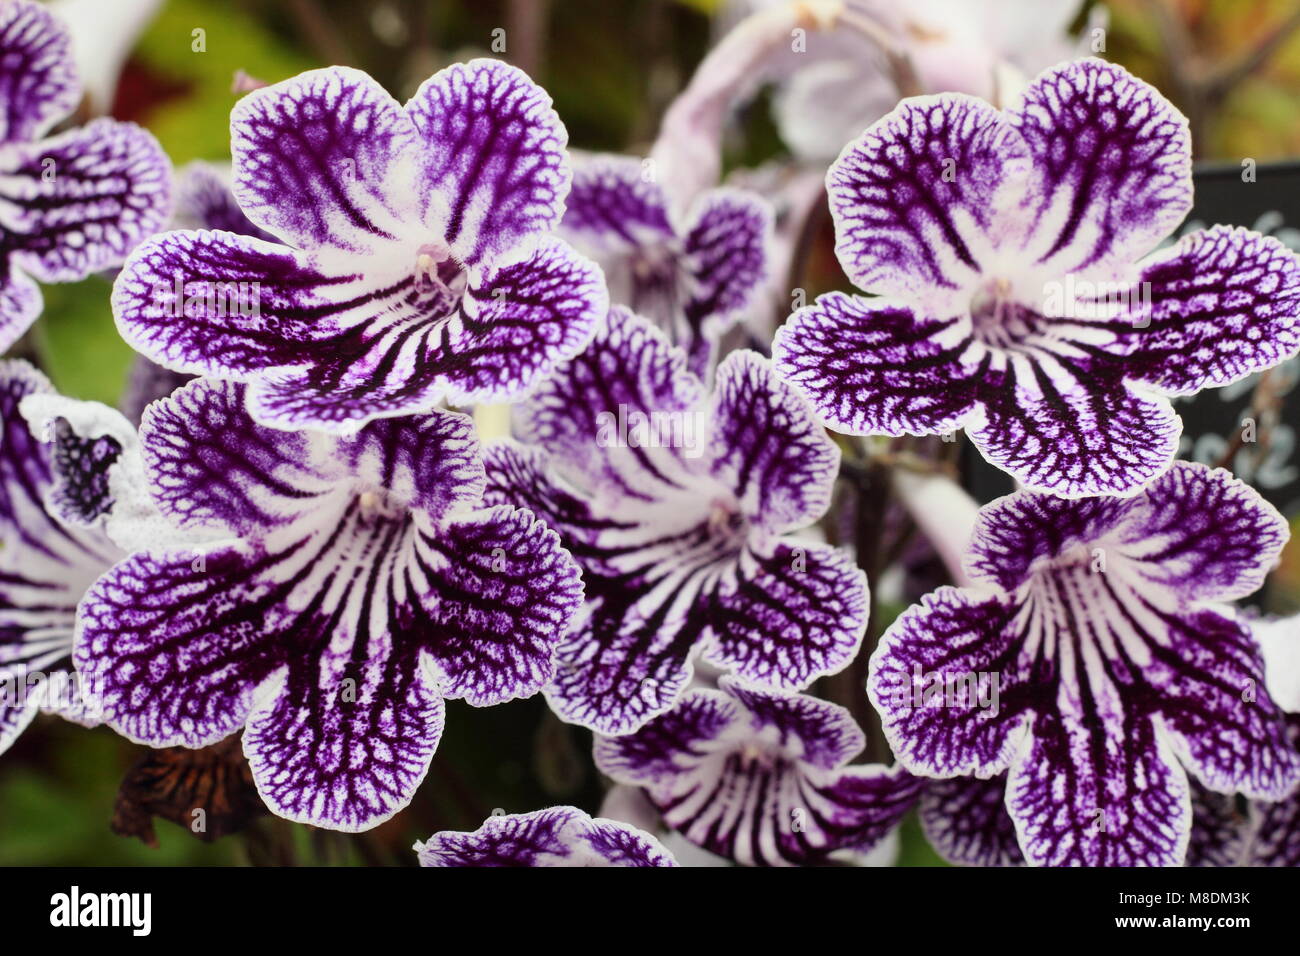 Streptocarpus 'Polka Dot viola' Cape primrose fioritura all'interno nella tarda estate, REGNO UNITO Foto Stock